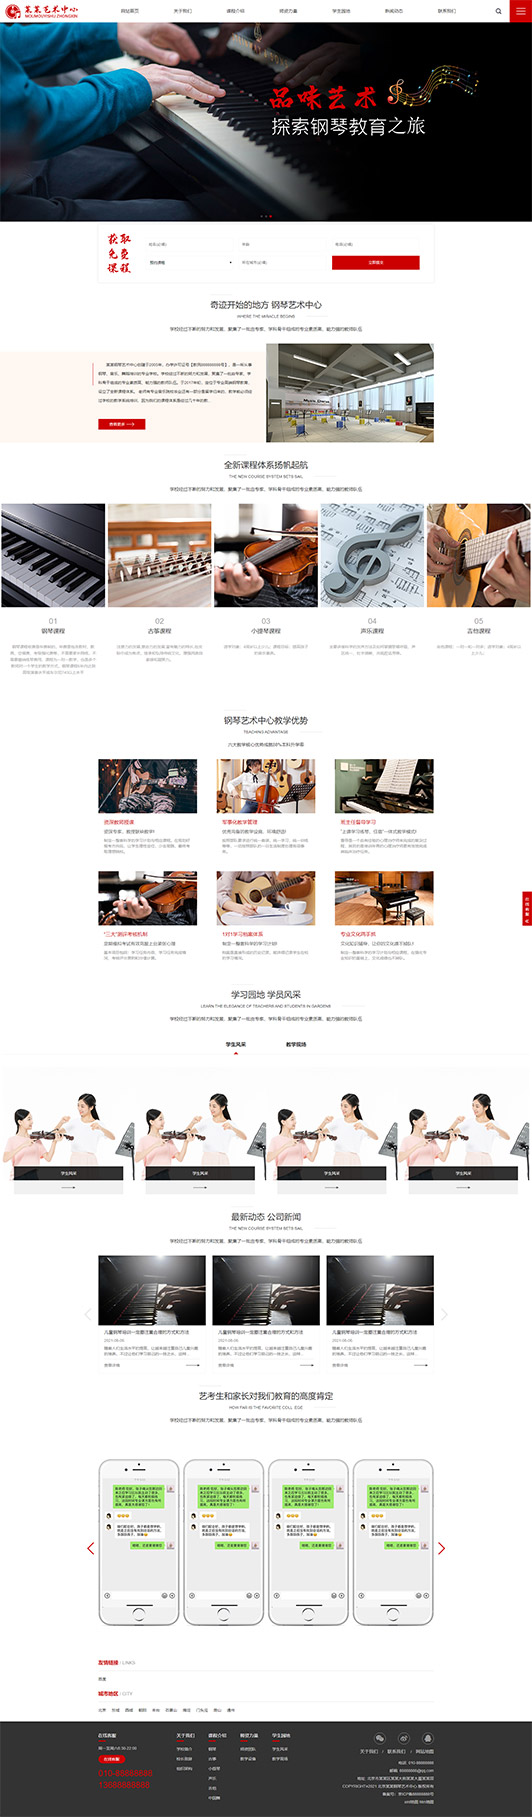 荆门钢琴艺术培训公司响应式企业网站